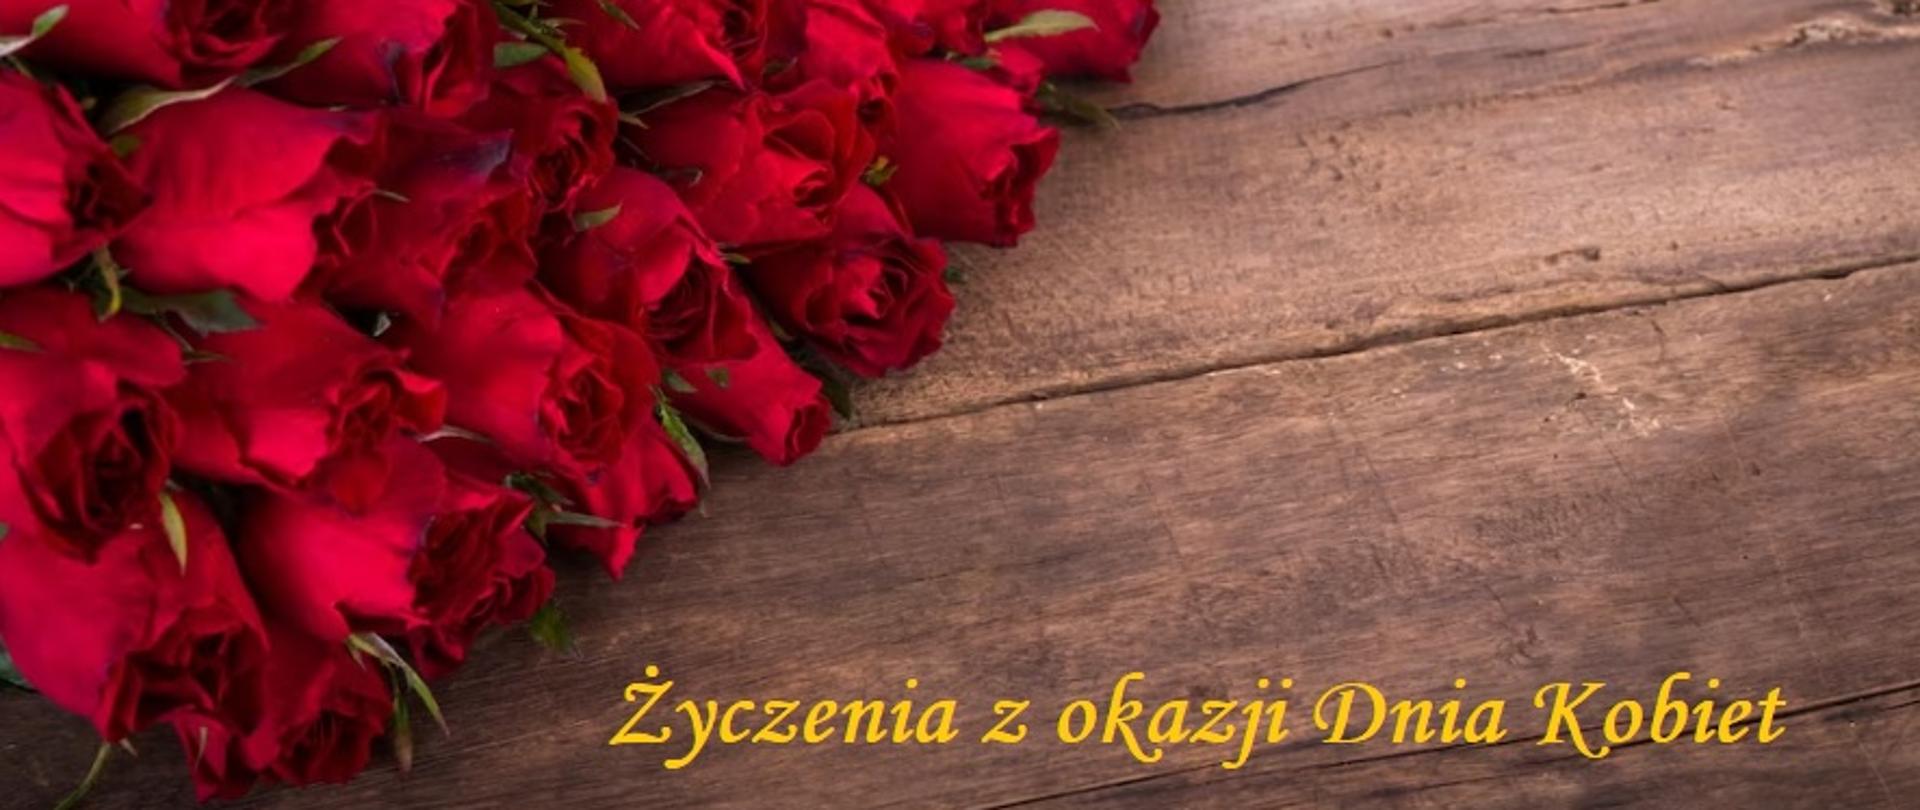 Czerwone róże na leżą po lewej stronie na drewnianych deskach. Na dole z prawej strony żółty napis Życzenia z okazji Dnia Kobiet